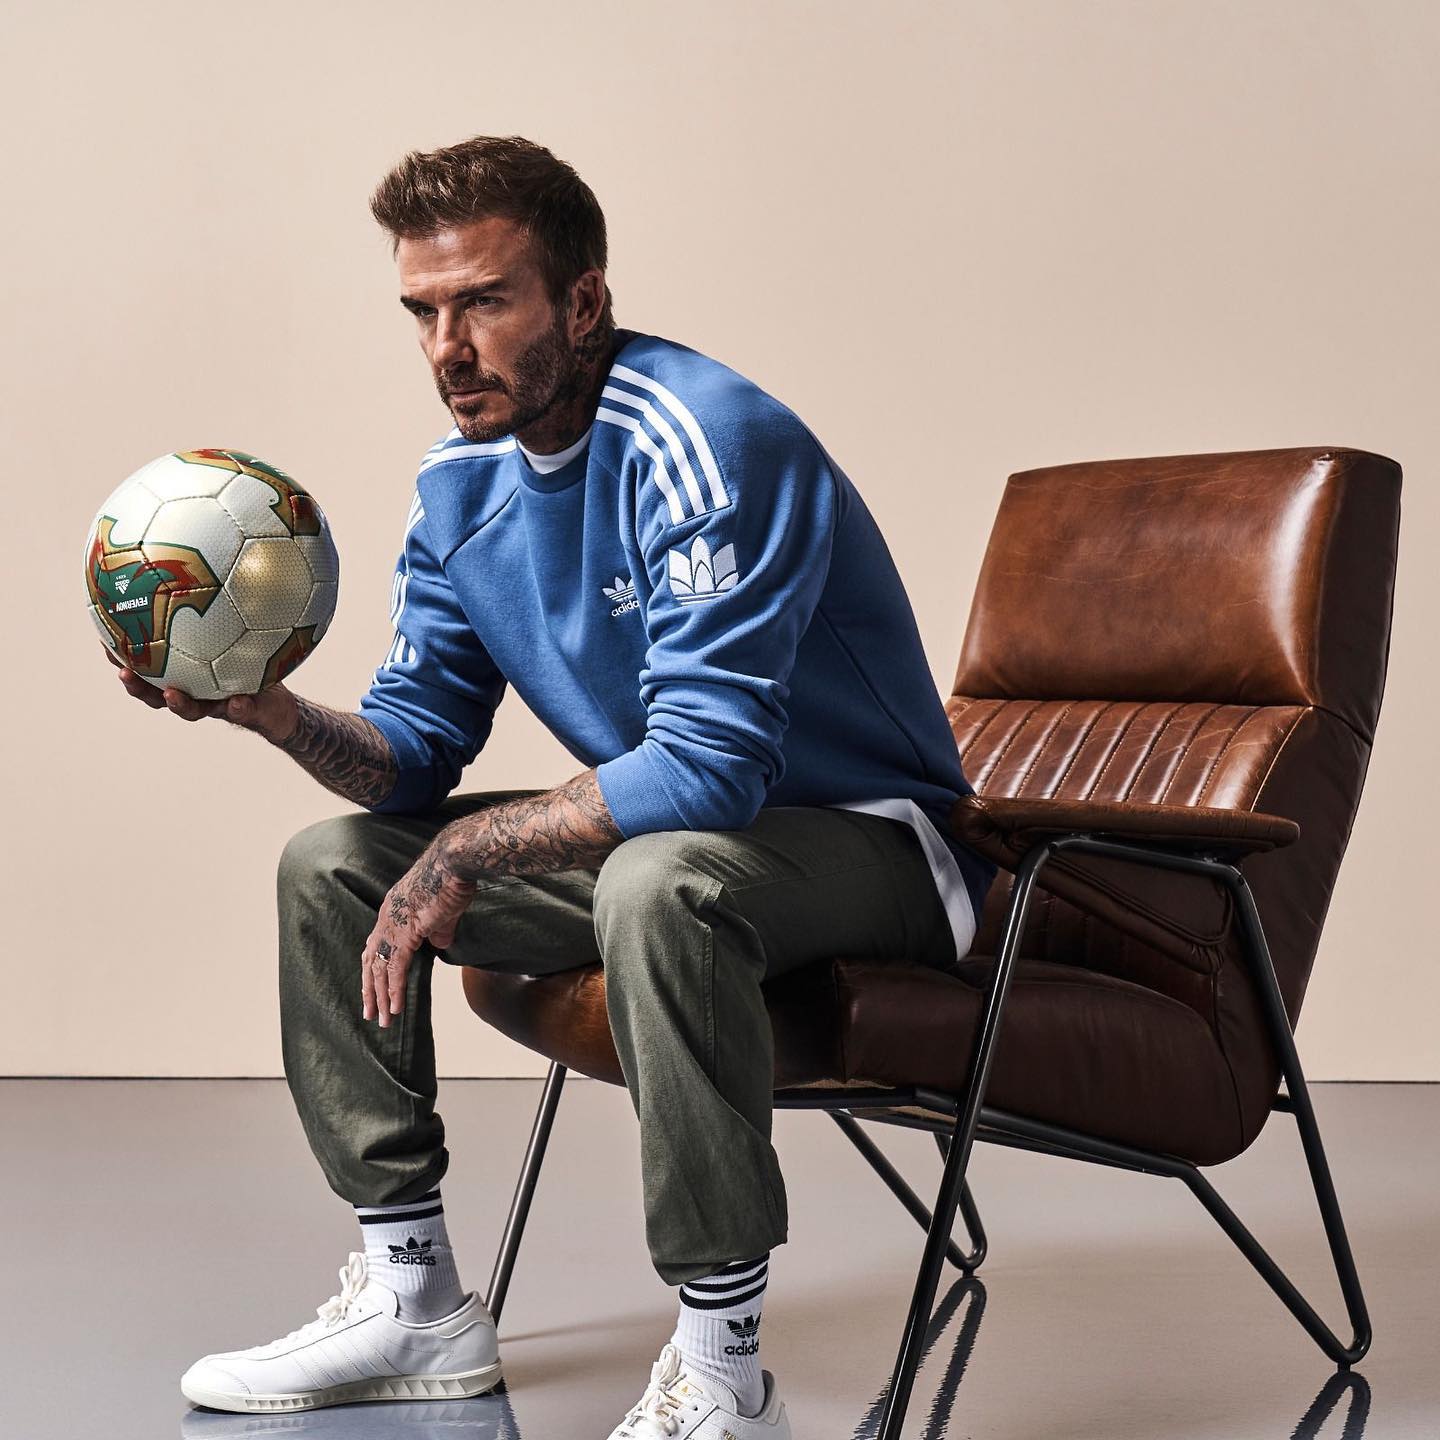 David Beckham Hands Over Instagram Account to Ukrainian Doctor